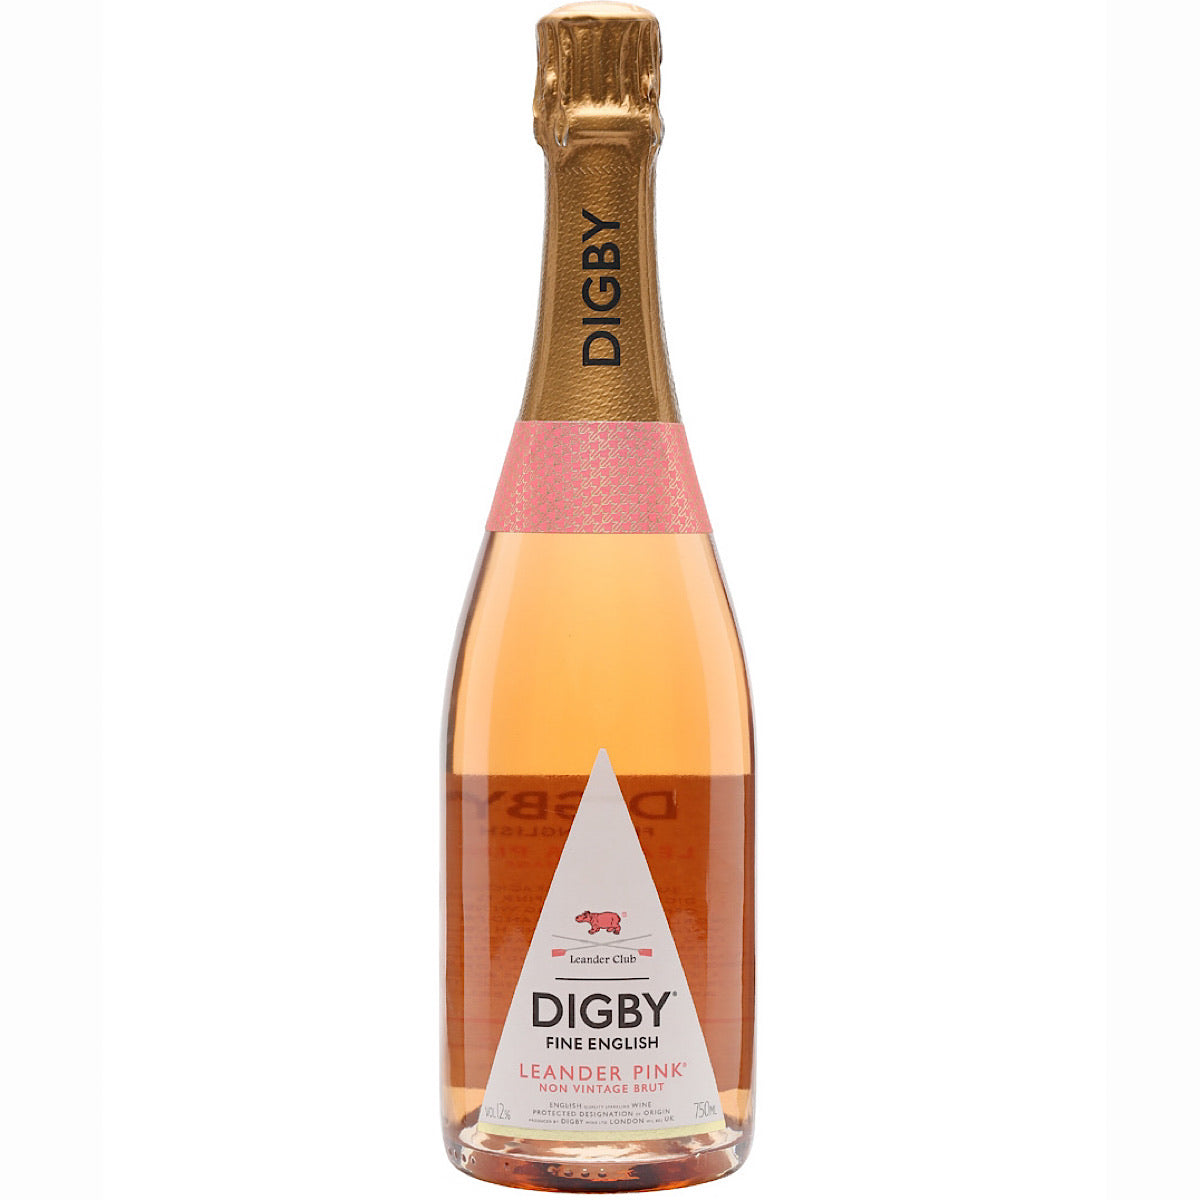 Digby Leander Pink Non Vintage Brut 6 Bottle Case 75cl